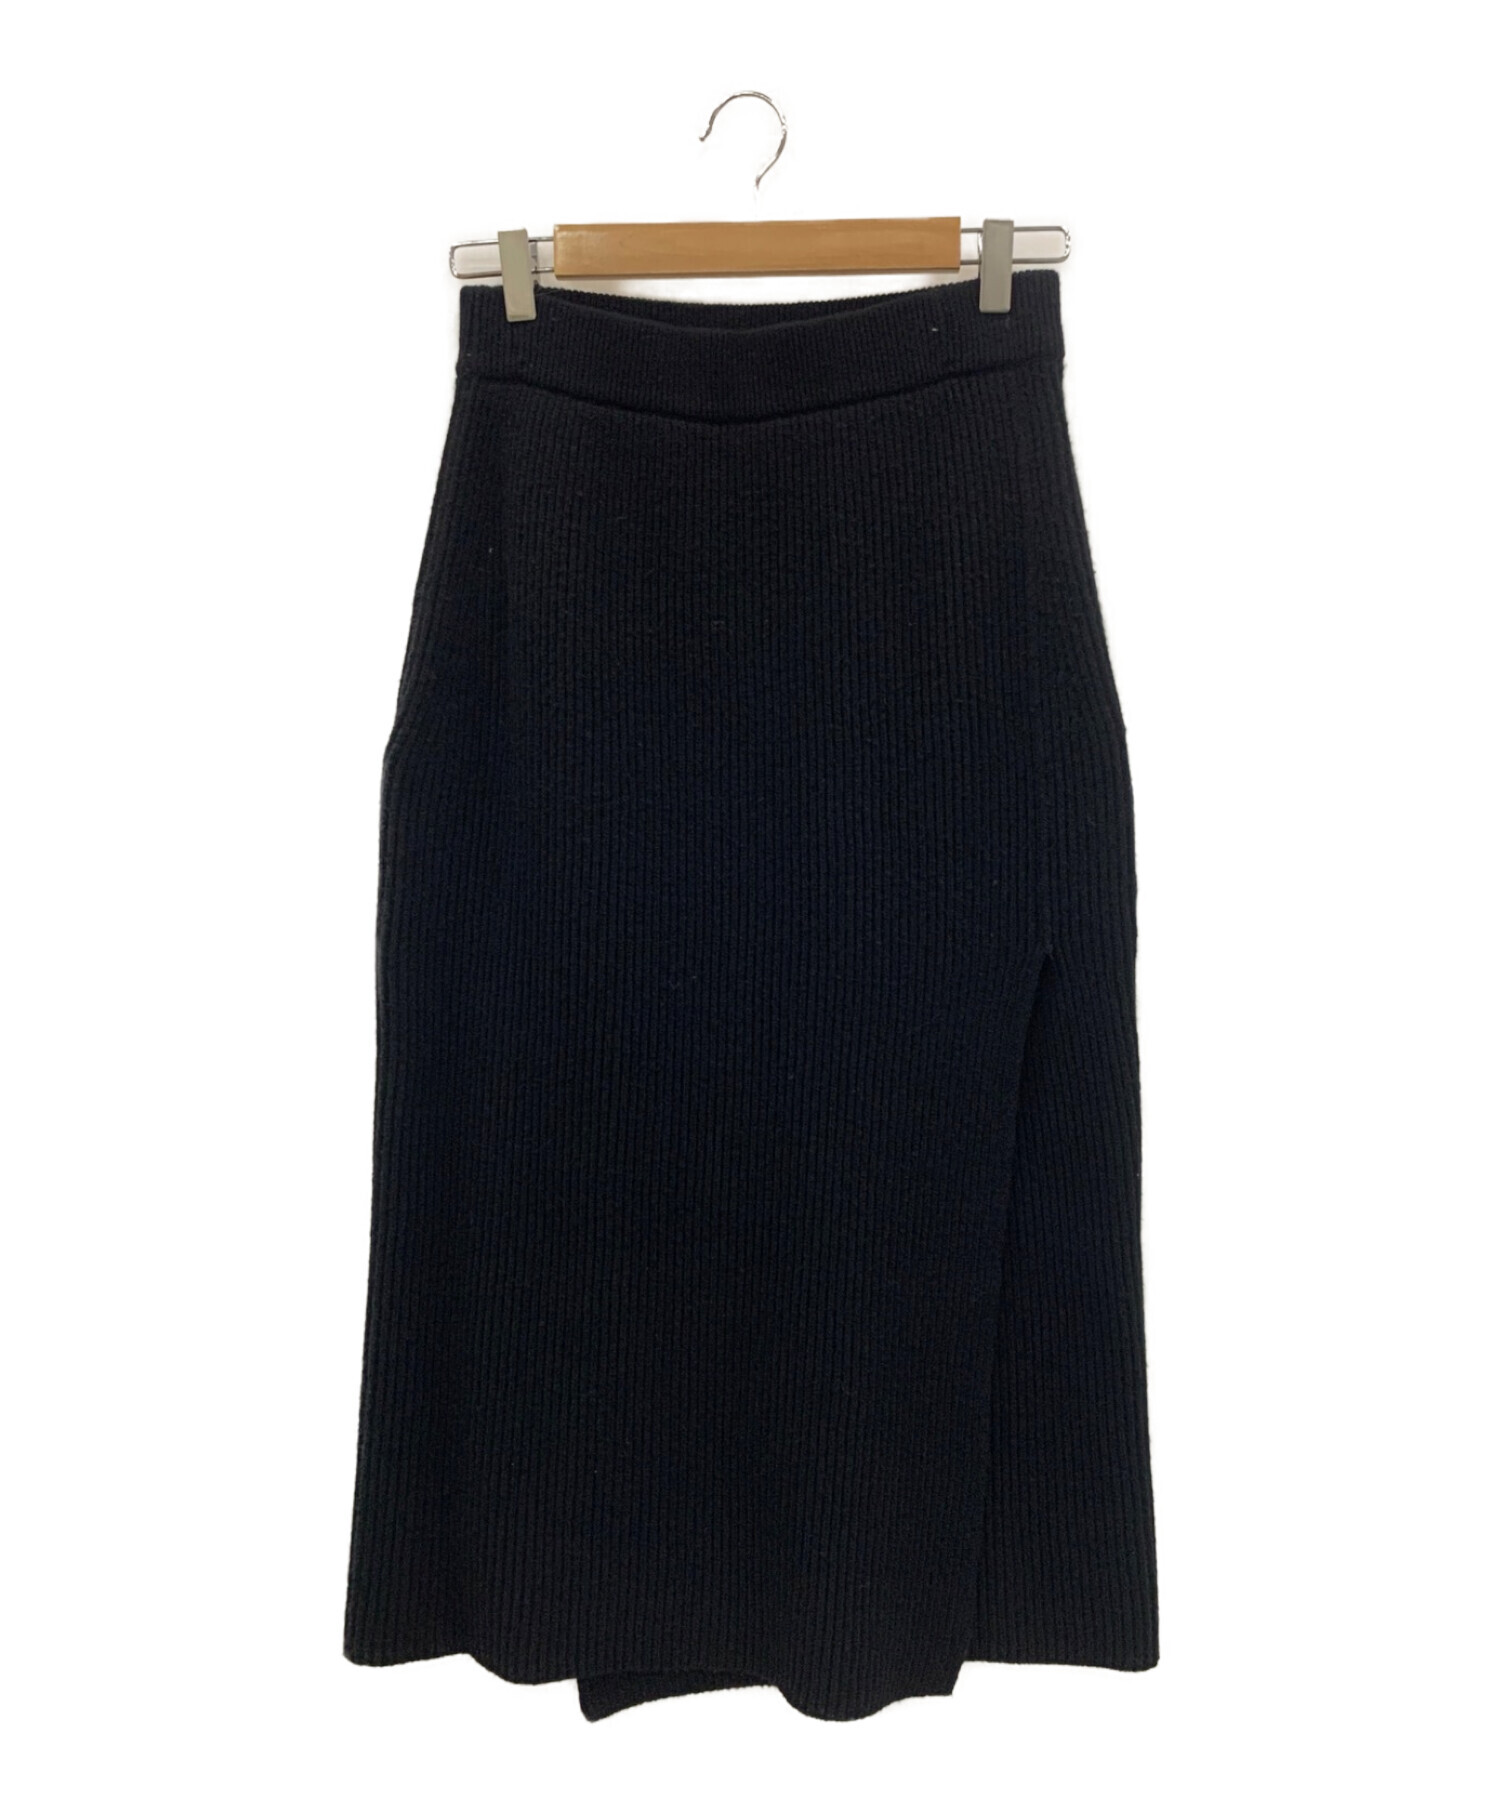 ロングスカート【最終価格】Drawer ニットスカート BLACK - ロングスカート